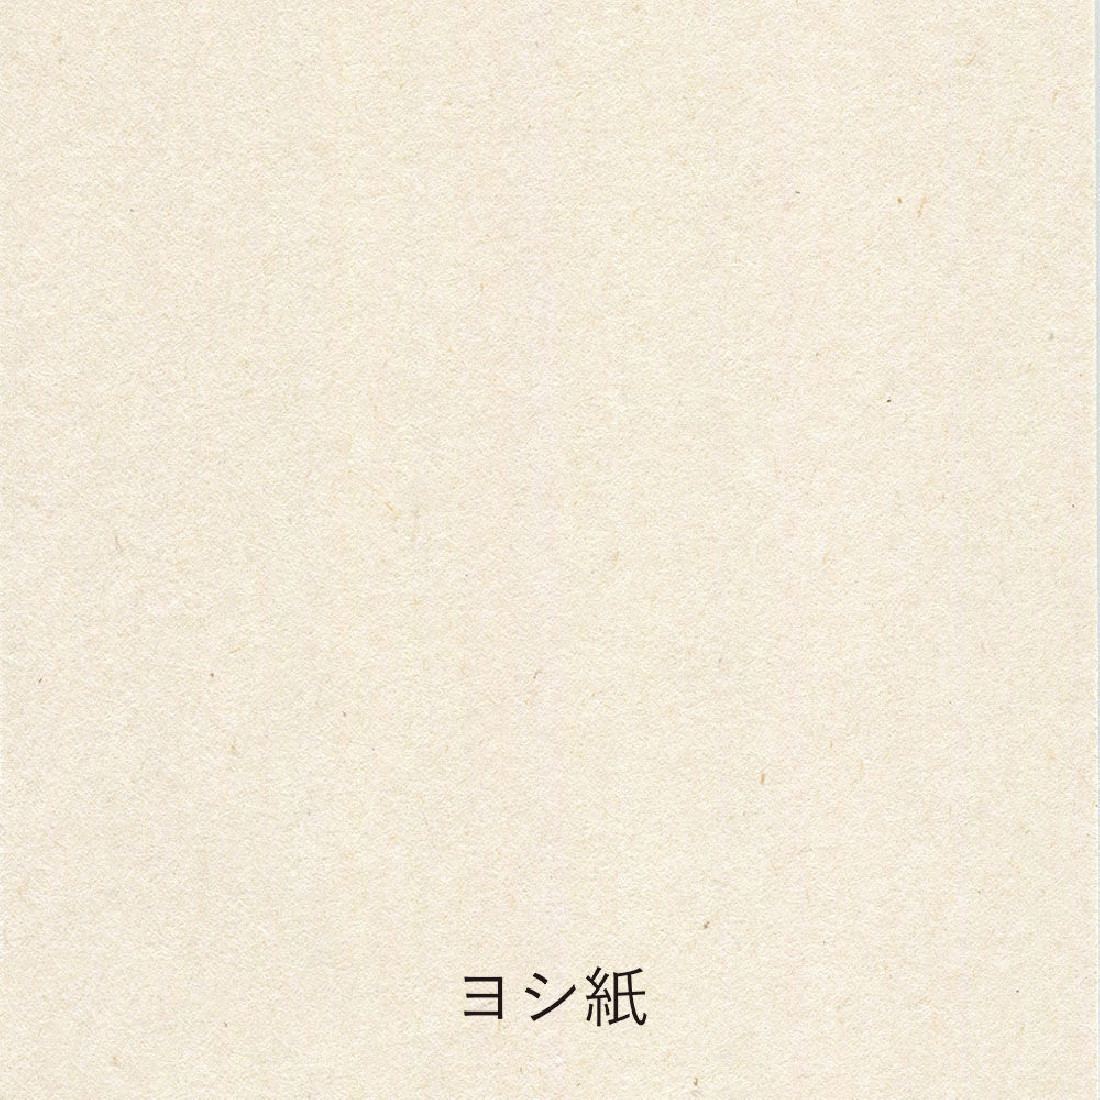 Yamamoto paper tasting Washi vol.3